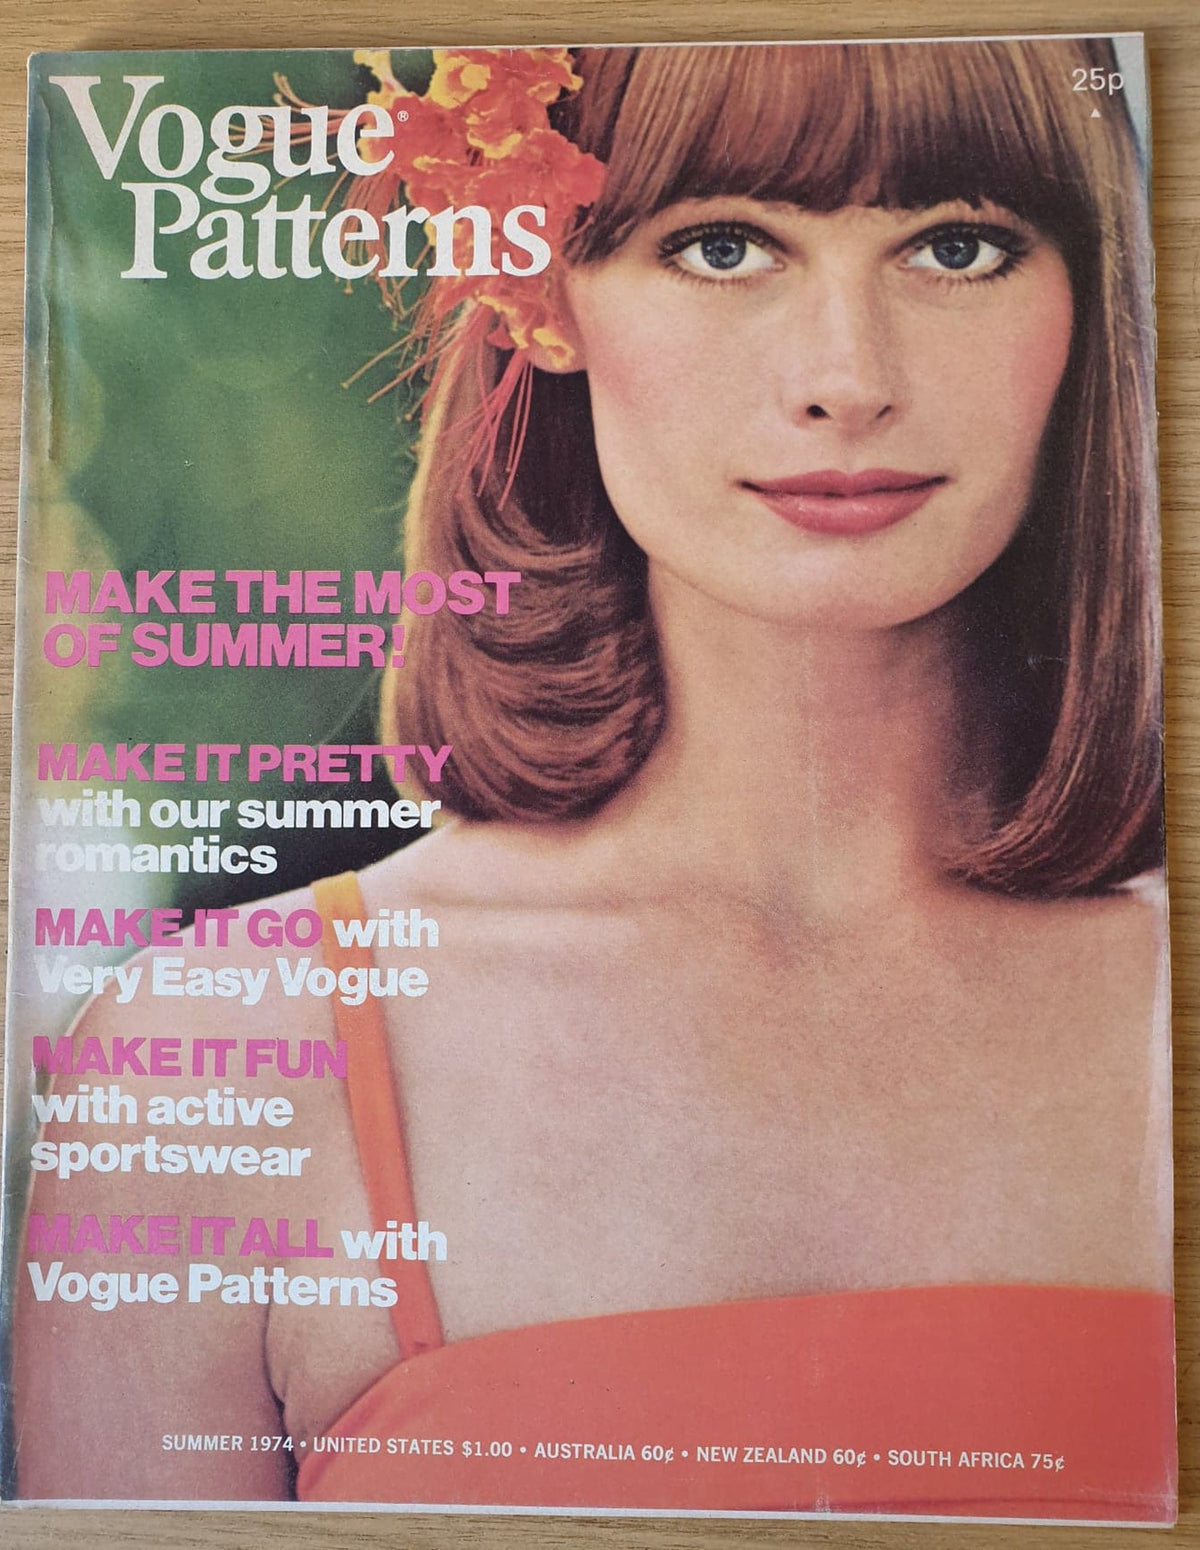 Vogue Patterns Book Summer 1974  Original Vintage  Retro Rare Fashion Magazine Gift Birthday Present